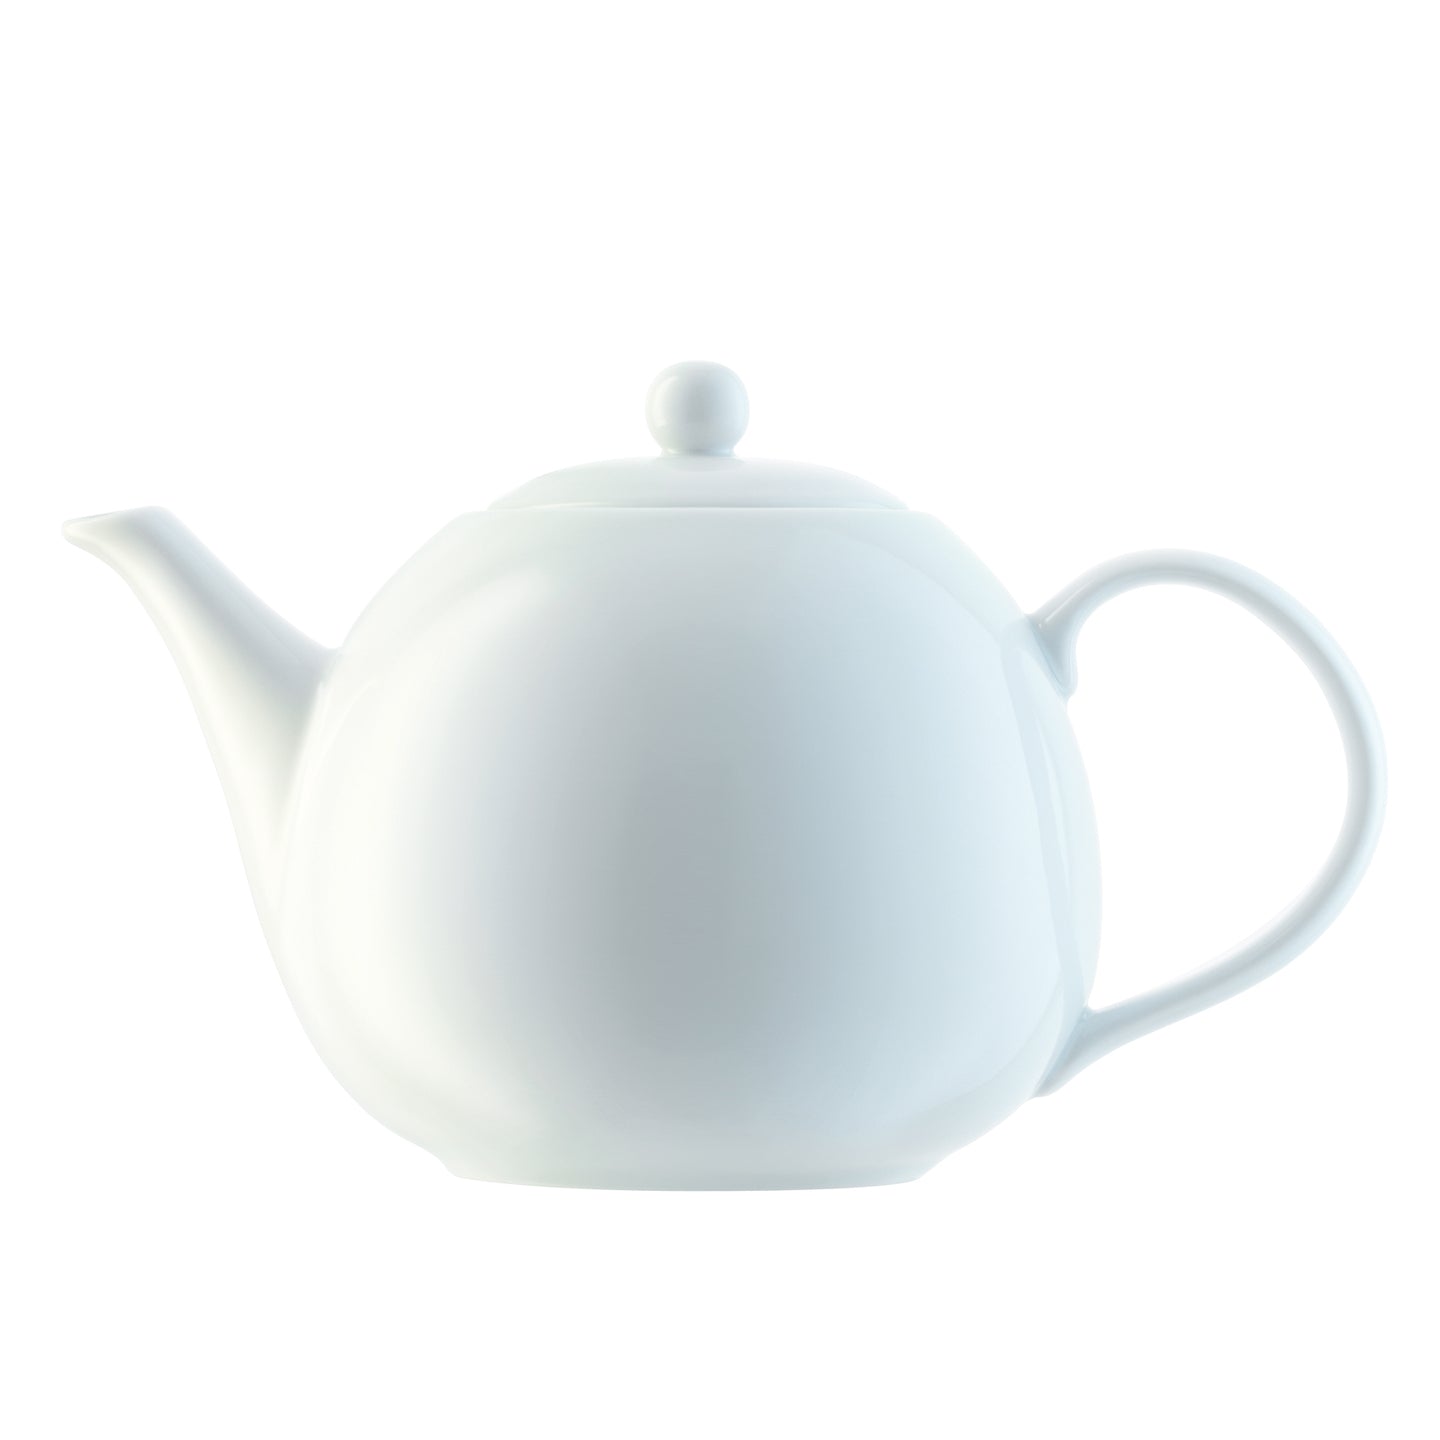 LSA Dine Tea Pot